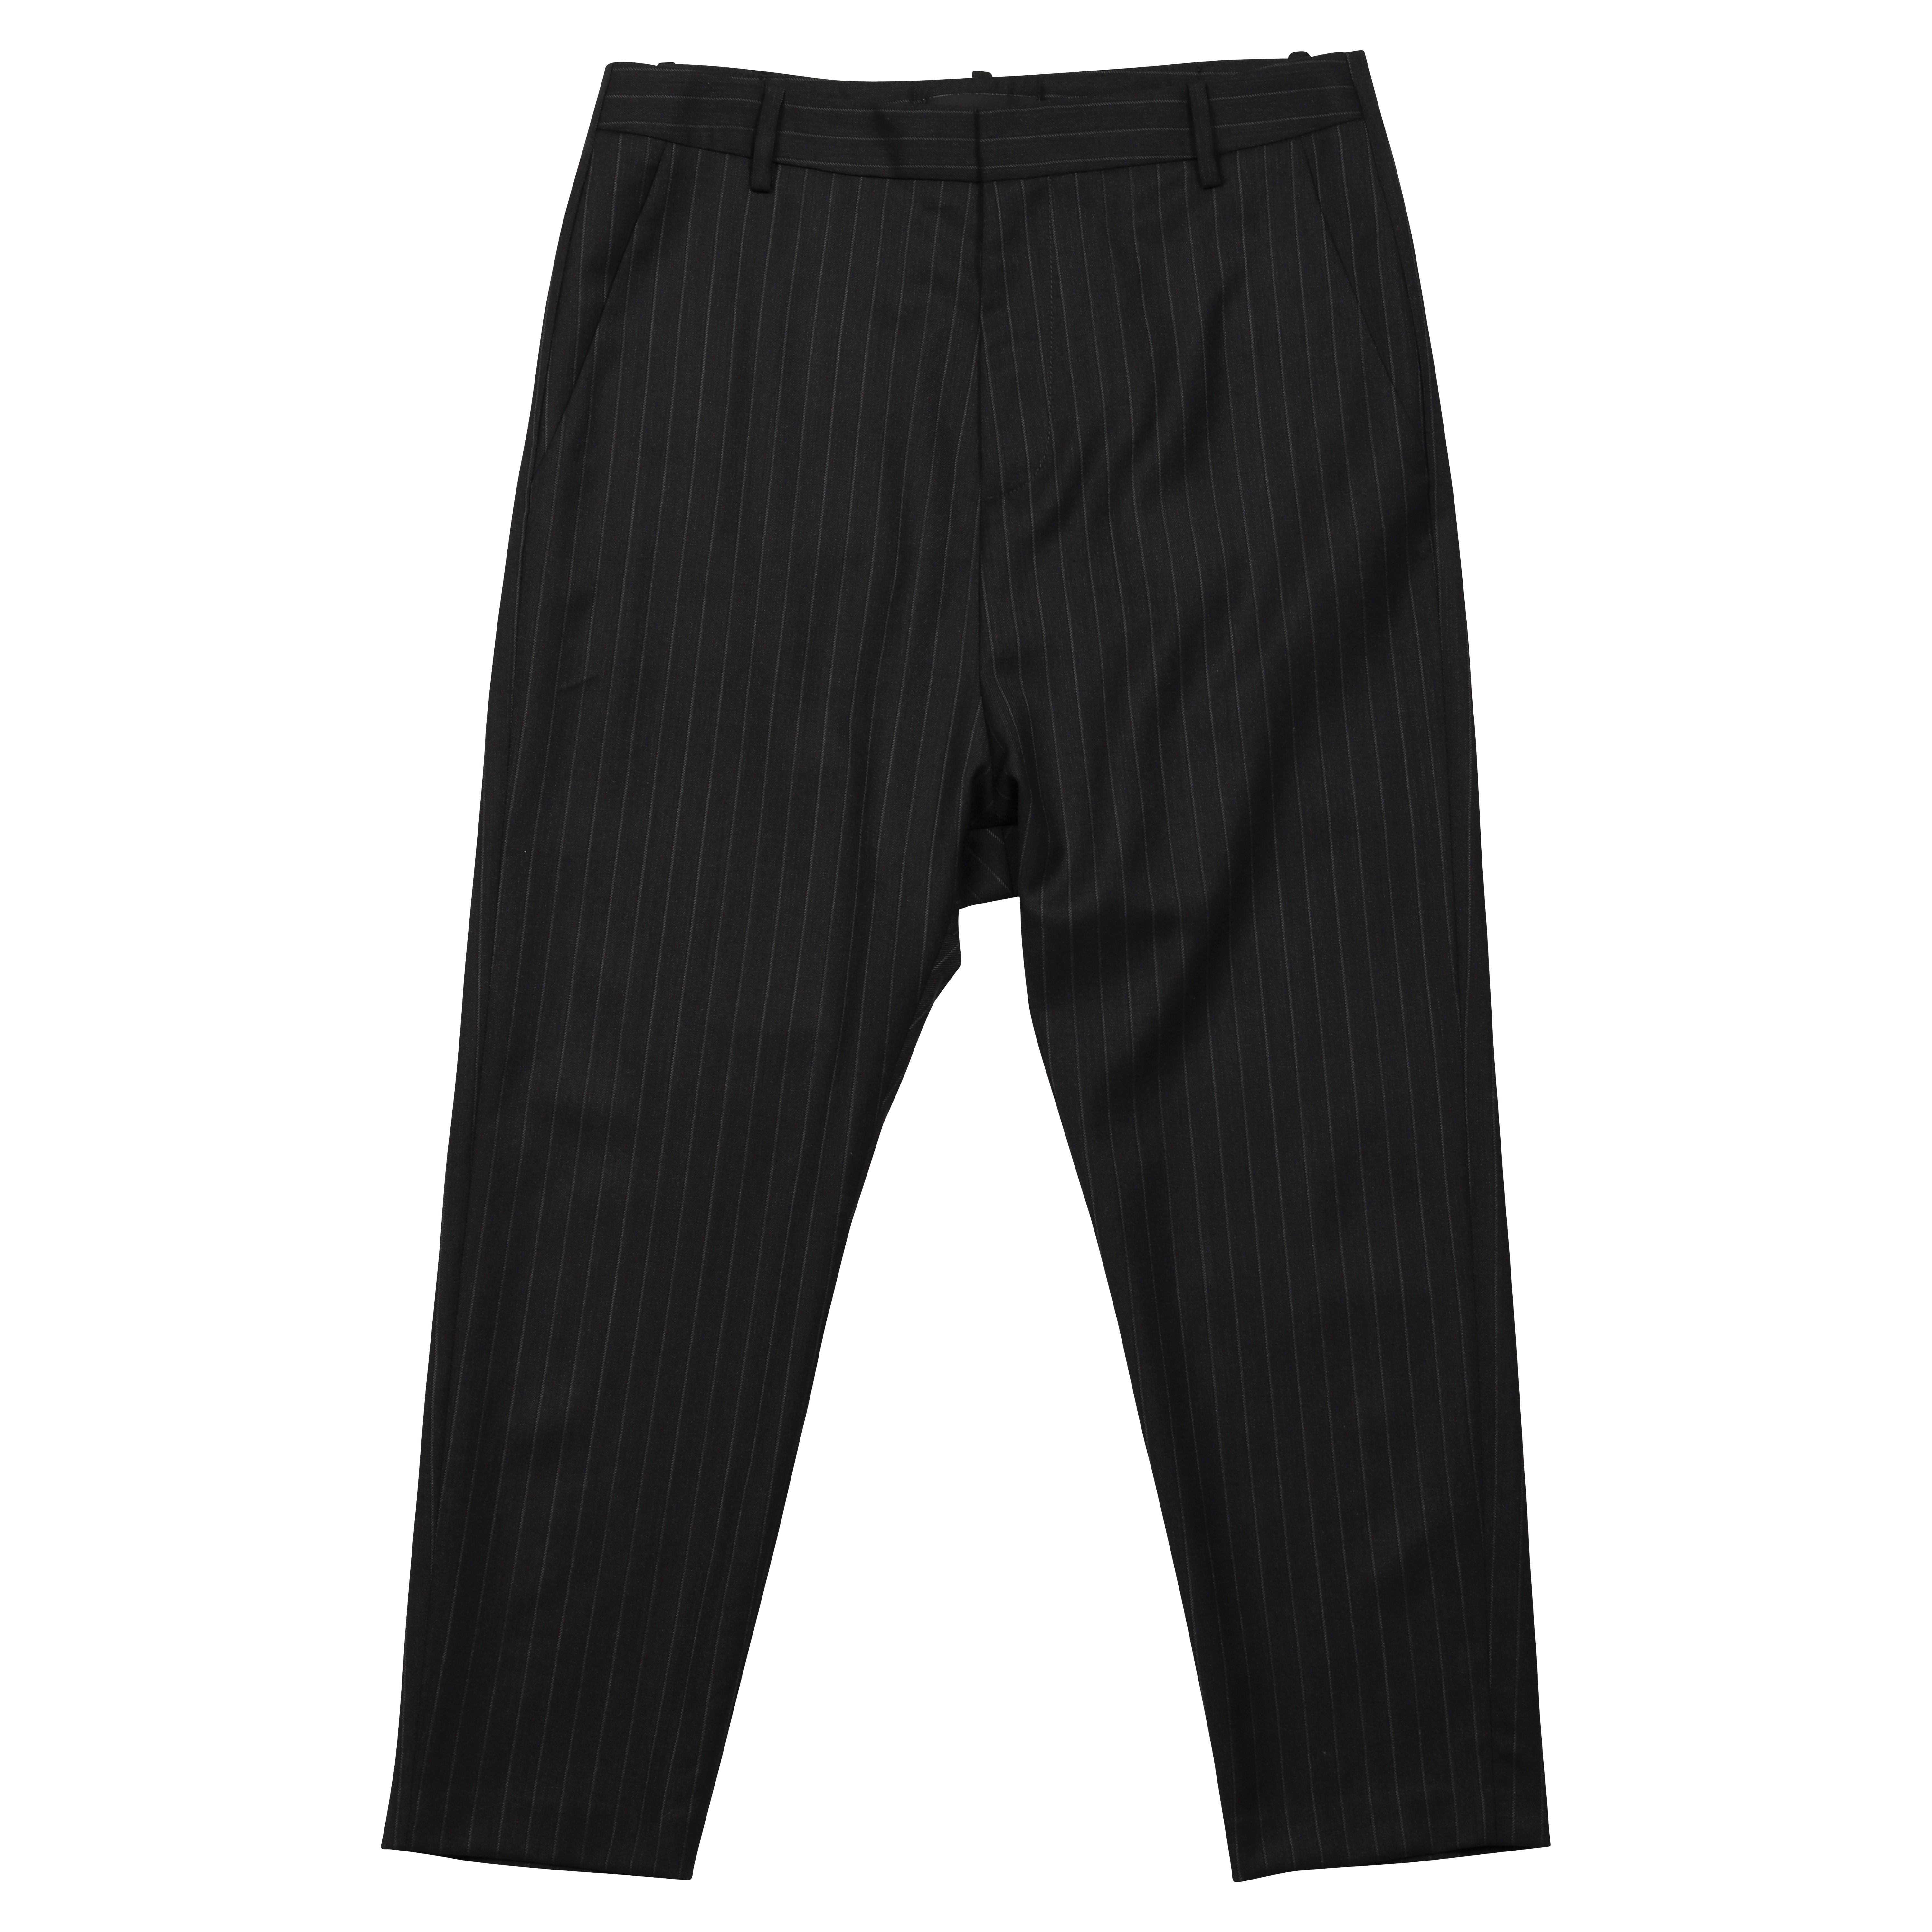 Nili Lotan Paris Wool Pant Charcoal Striped 4/M